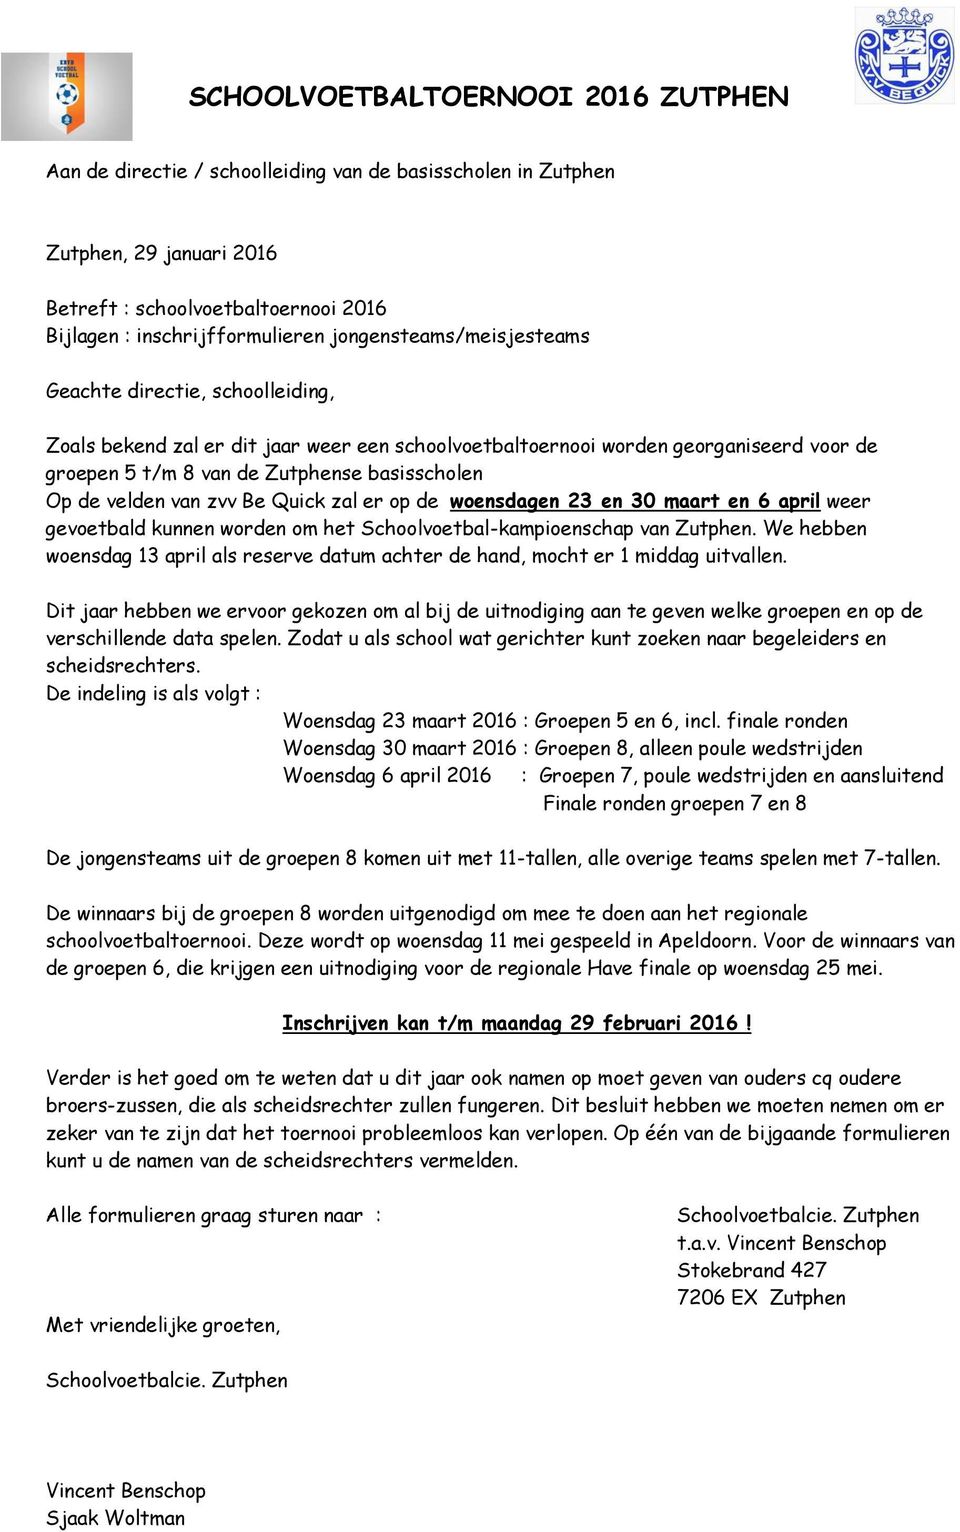 woensdagen 23 en 30 maart en 6 april weer gevoetbald kunnen worden om het Schoolvoetbal-kampioenschap van Zutphen.